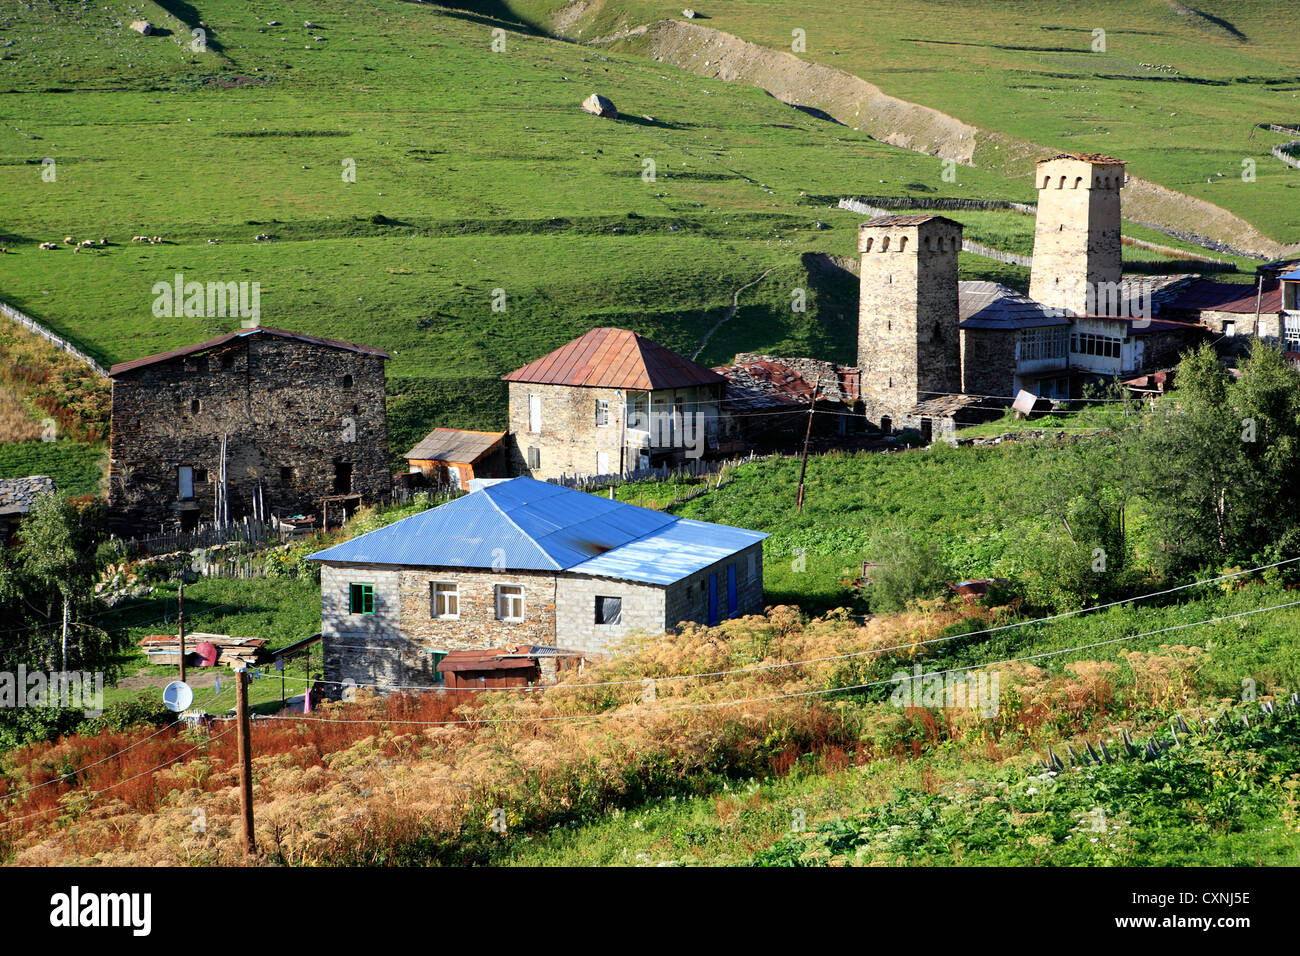 Village near Shkhara peak (5068 m), Ushghuli community, Upper Svanetia, Georgia Stock Photo